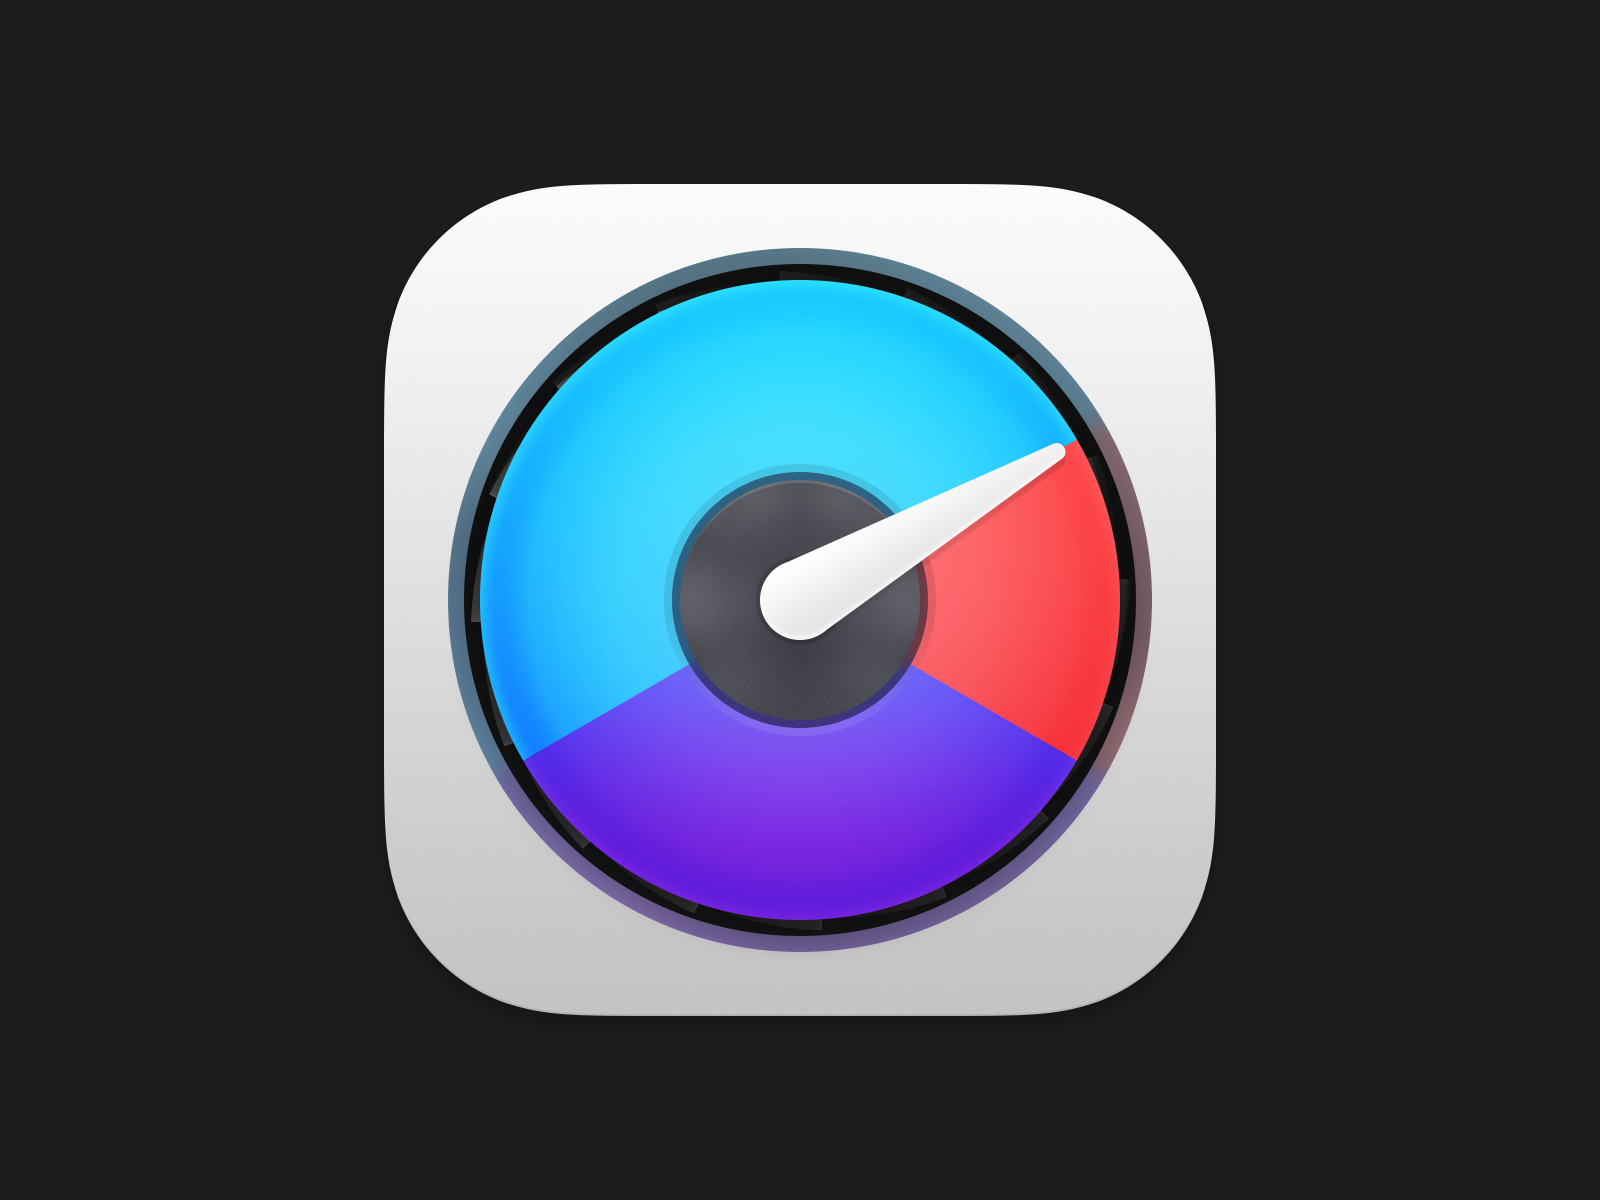 iStat Menus 6 app icon for macOS Big Sur